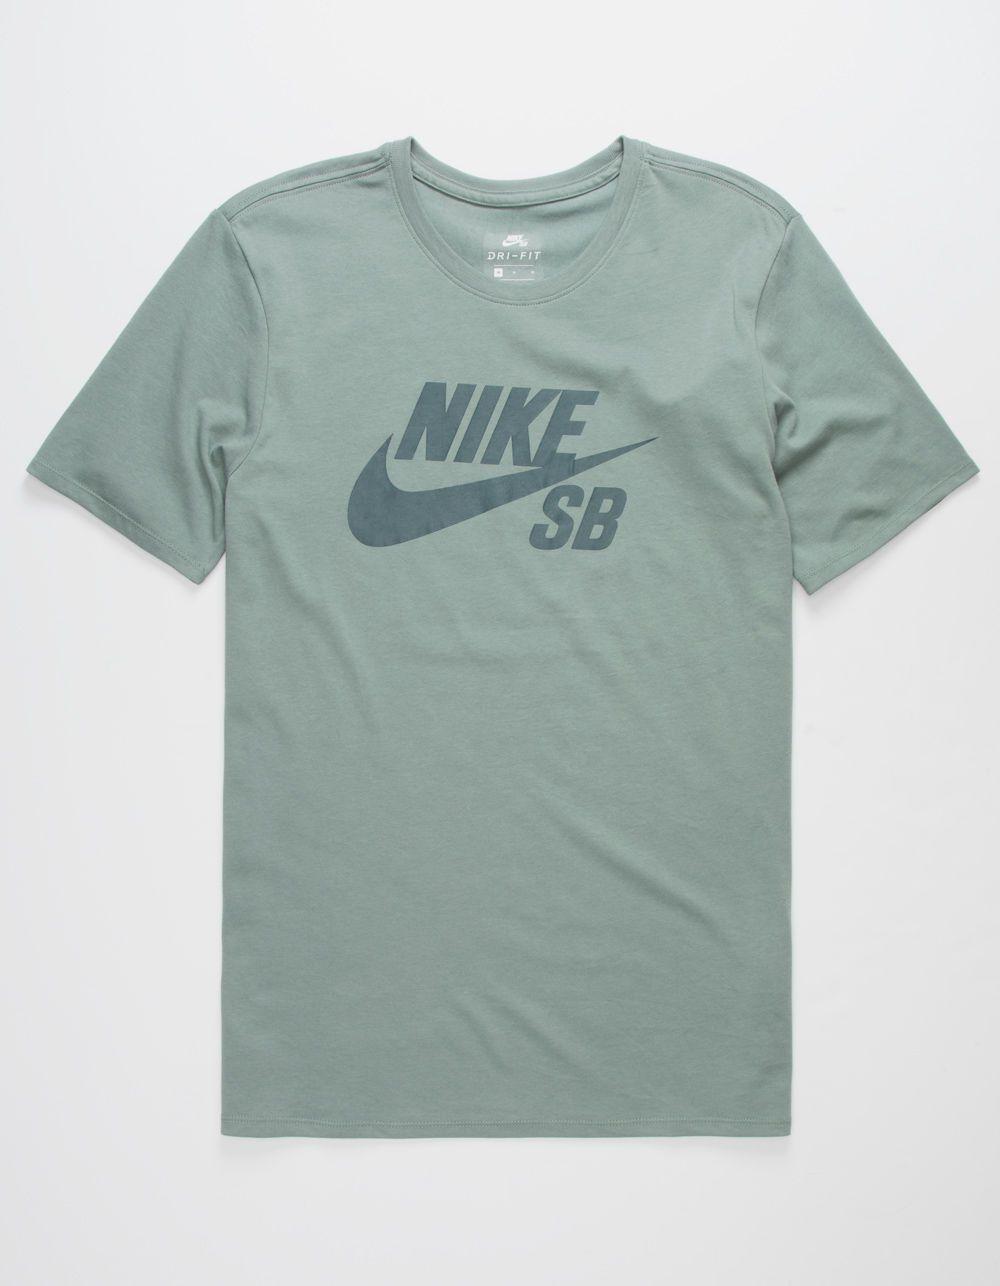 Nike SB Clothing Logo - NIKE SB Logo Dri-FIT Sage Mens T-Shirt Mens Clothing SAGE LNRYMI73406